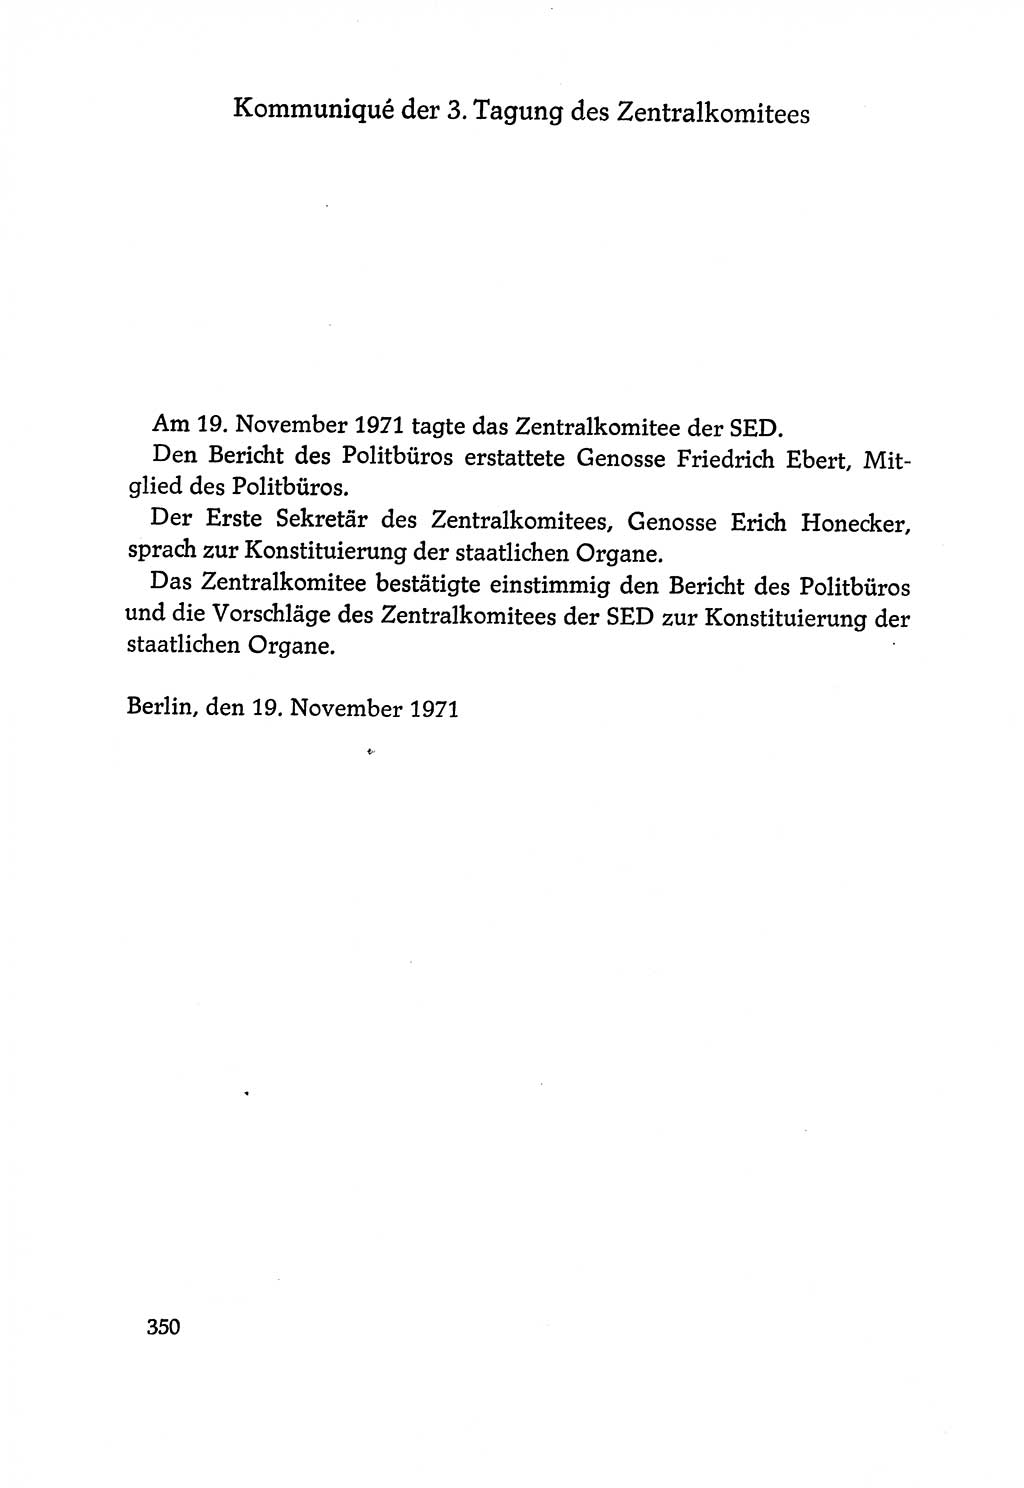 Dokumente der Sozialistischen Einheitspartei Deutschlands (SED) [Deutsche Demokratische Republik (DDR)] 1970-1971, Seite 350 (Dok. SED DDR 1970-1971, S. 350)